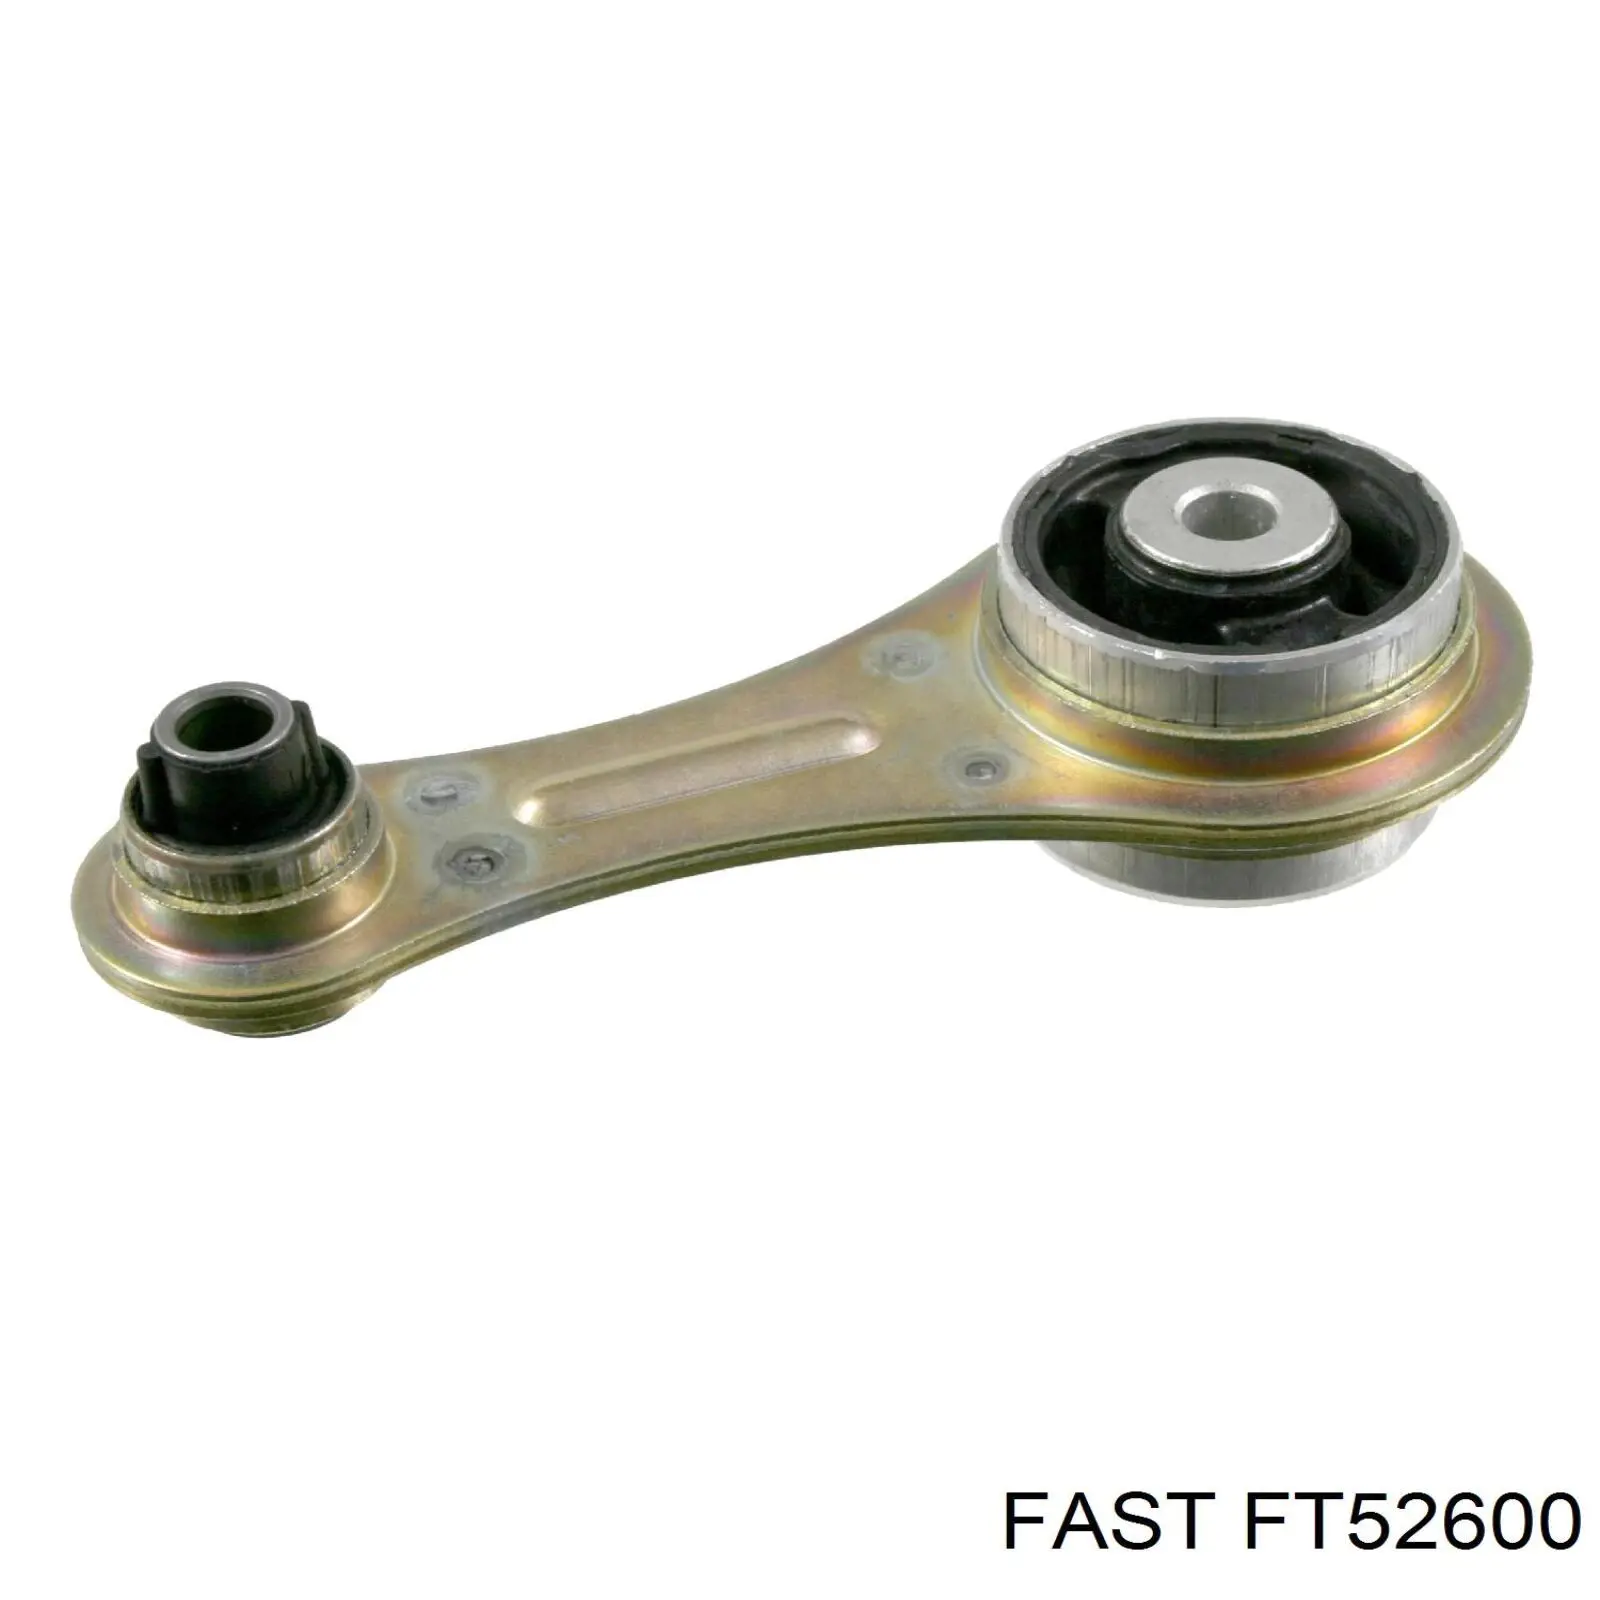 FT52600 Fast coxim (suporte traseiro de motor)